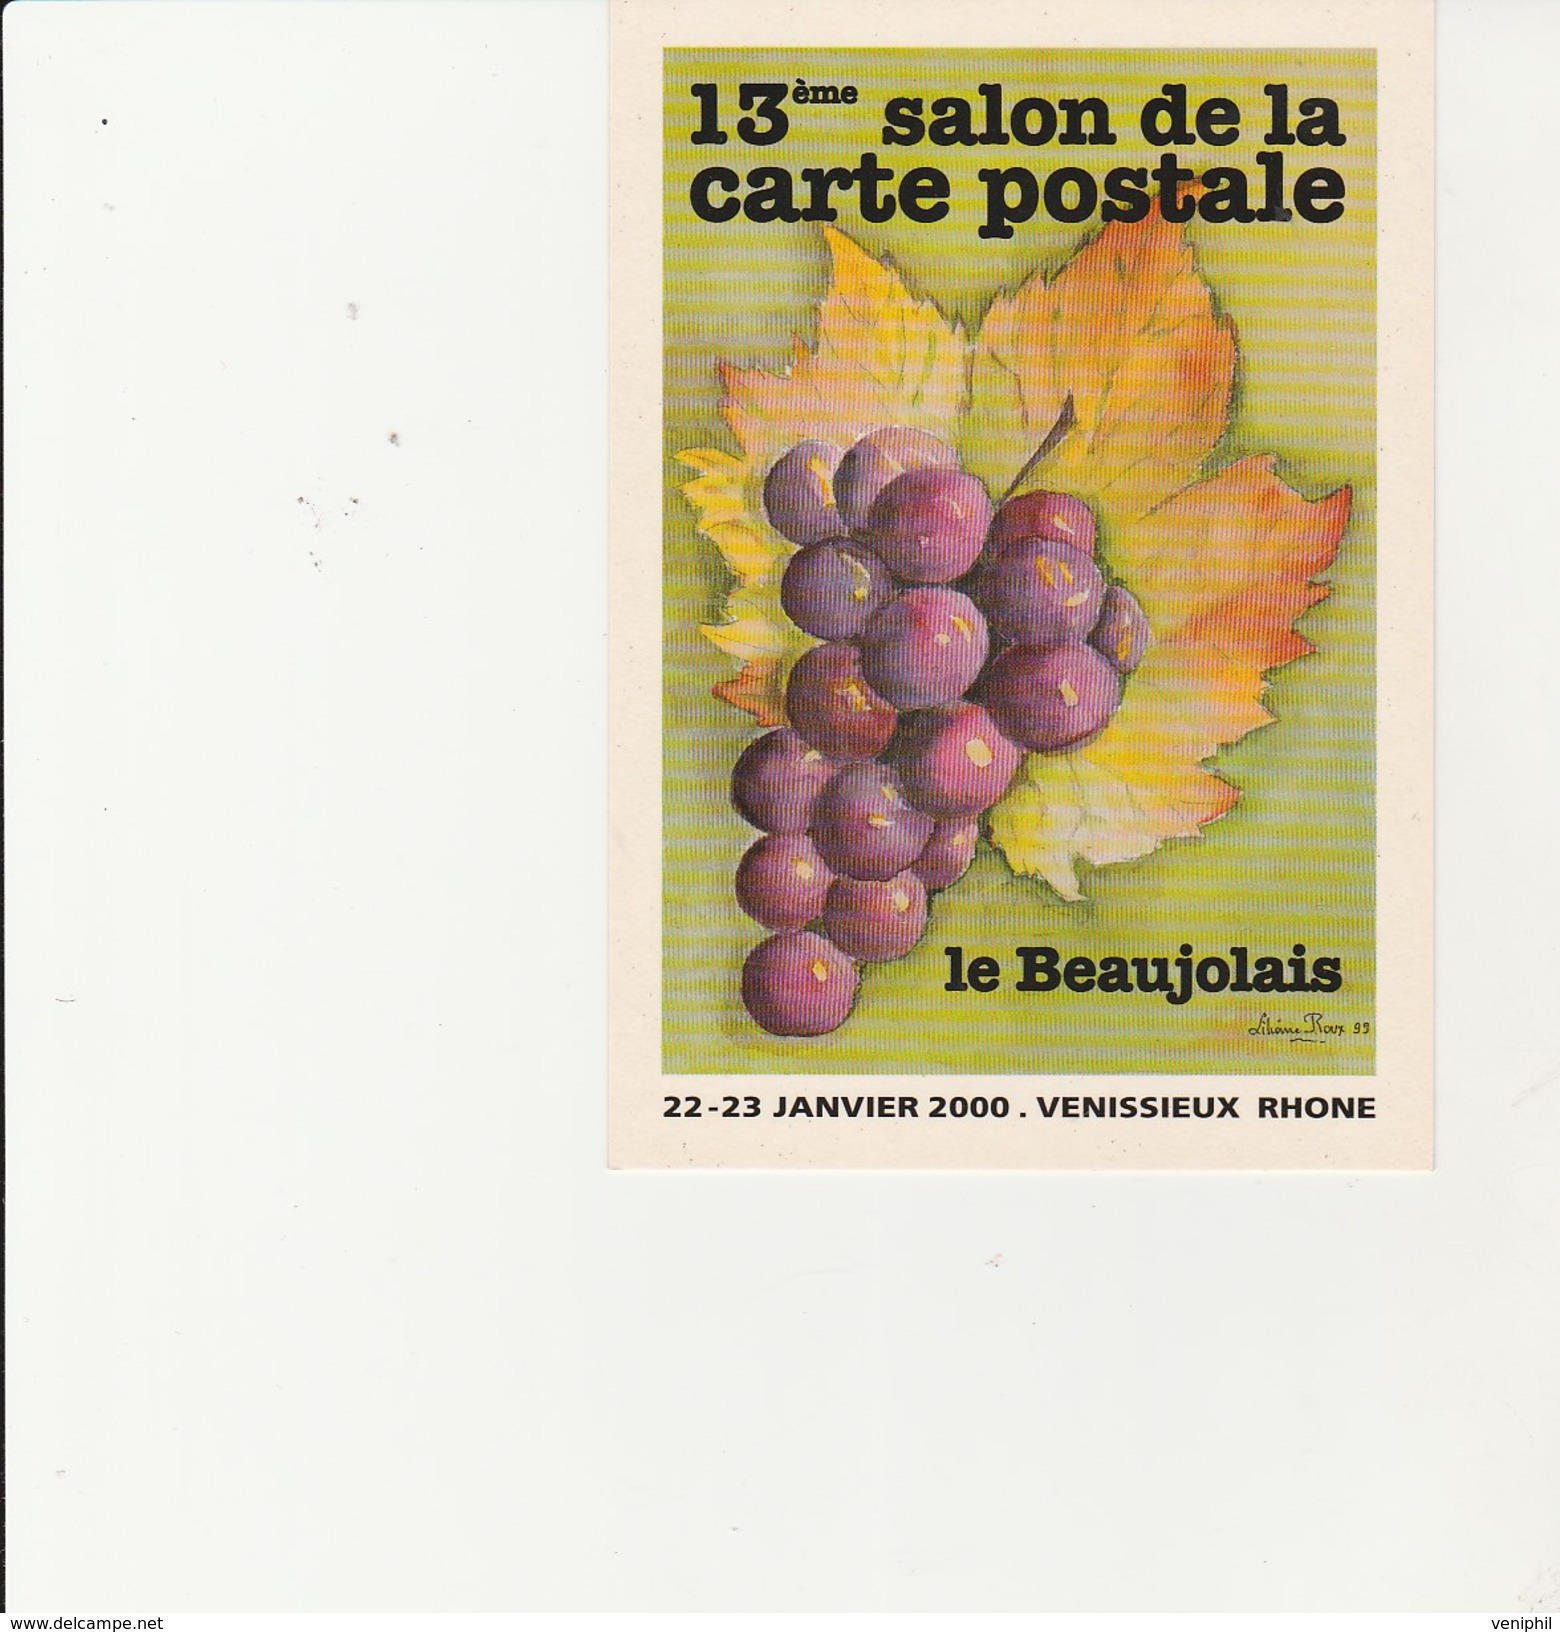 VENISSIEUX - 13 EME SALON DE LA CARTE POSTALE  -22-23 JANV 2000 - THEME / LE BEAUJOLAIS -DESSIN DE LILIANE ROUX - Sammlerbörsen & Sammlerausstellungen